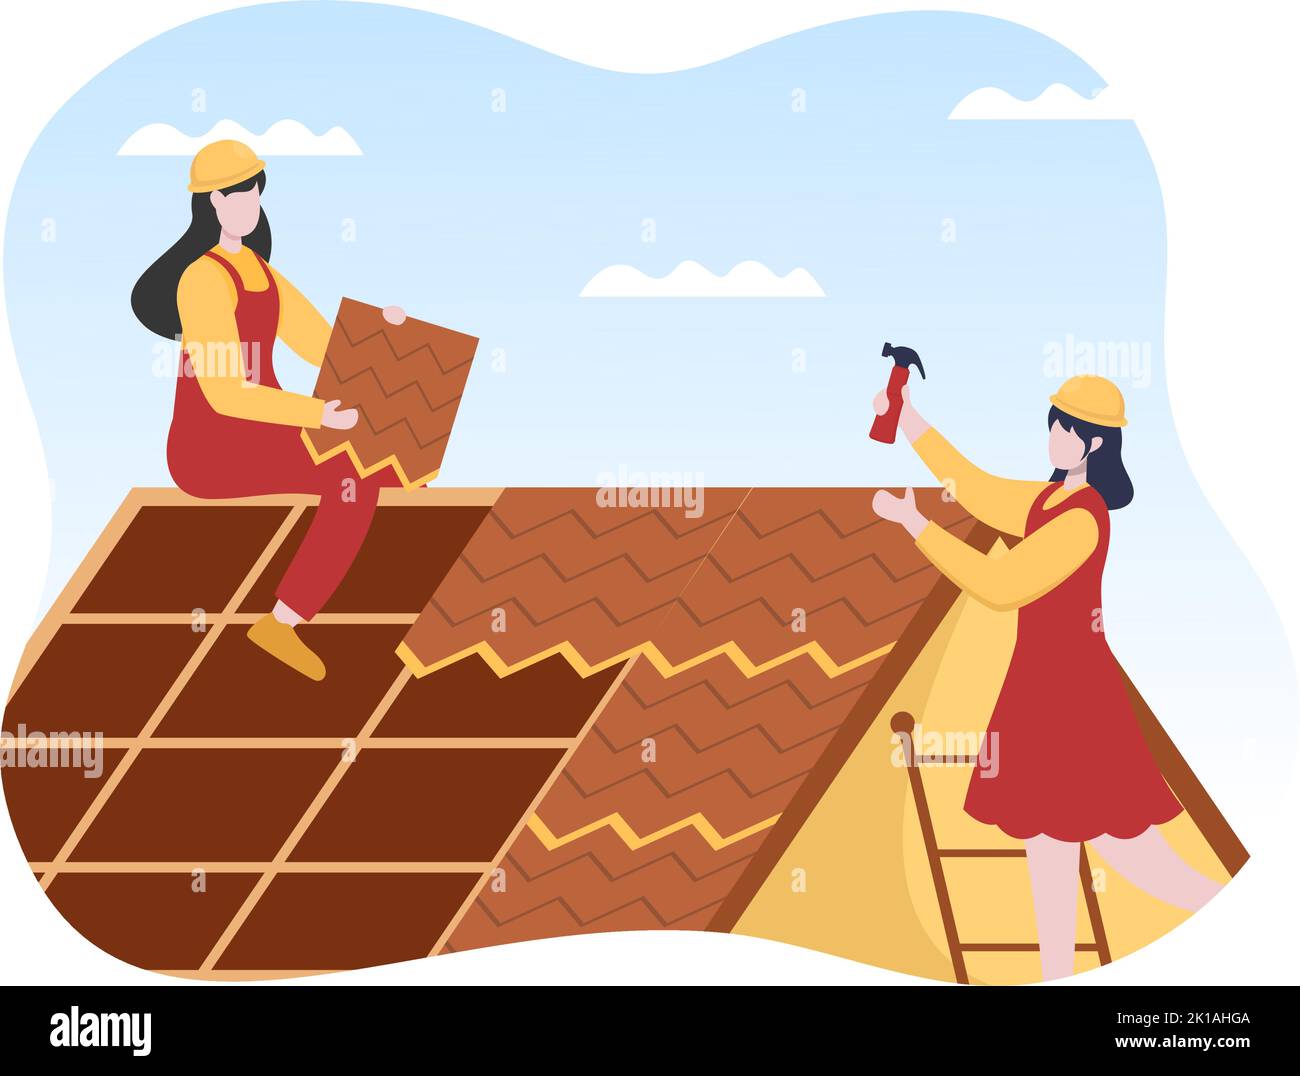 Dachkonstruktion Arbeiter Vorlage Hand gezeichnet Cartoon flache Illustration mit Dach Renovierung, Befestigung Dachziegel Haus und Dach Wiederaufbau Stock Vektor